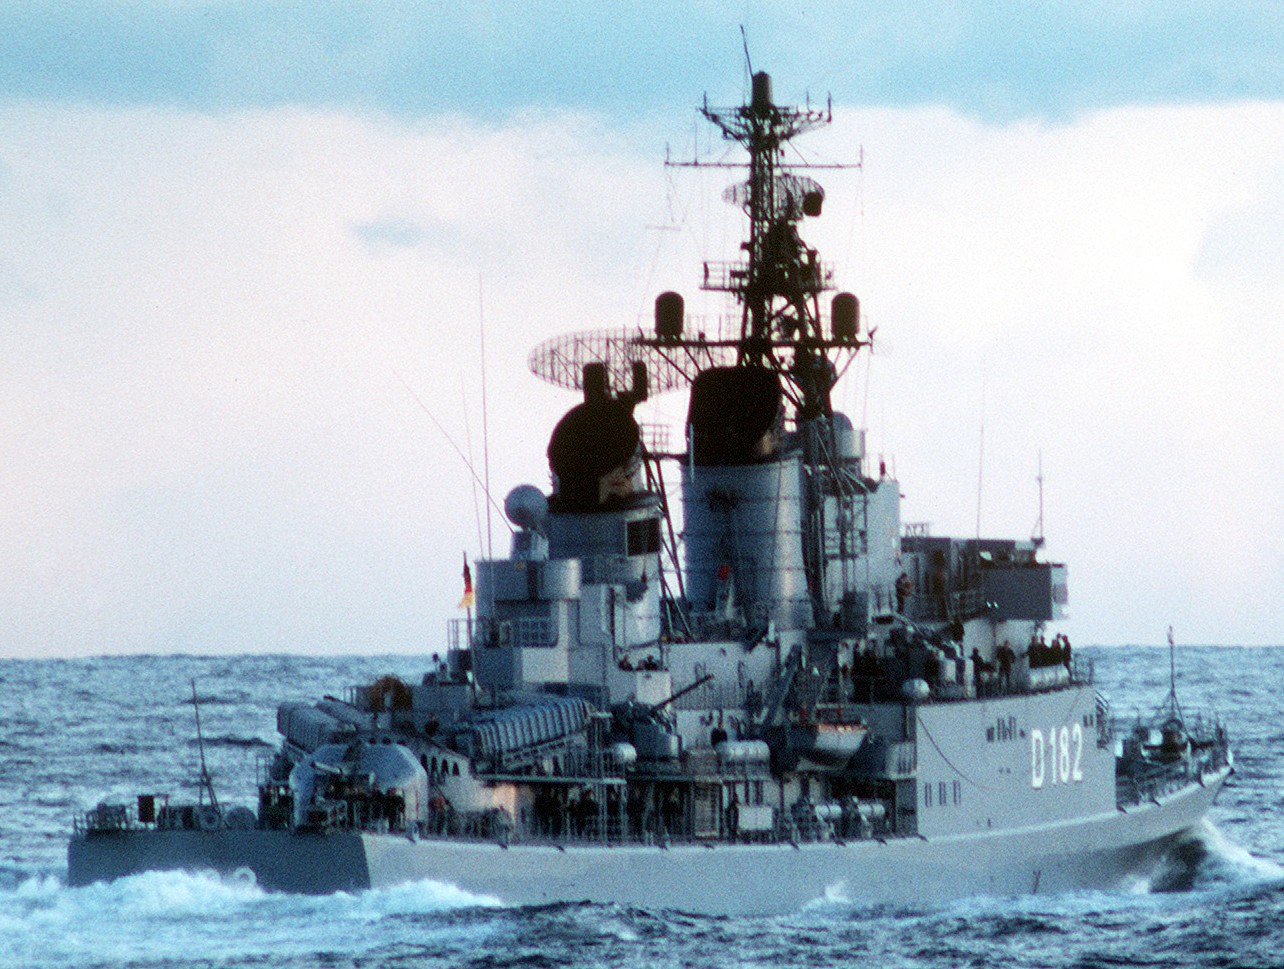 d-182 fgs schleswig-holstein type 101a hamburg class destroyer german navy 10